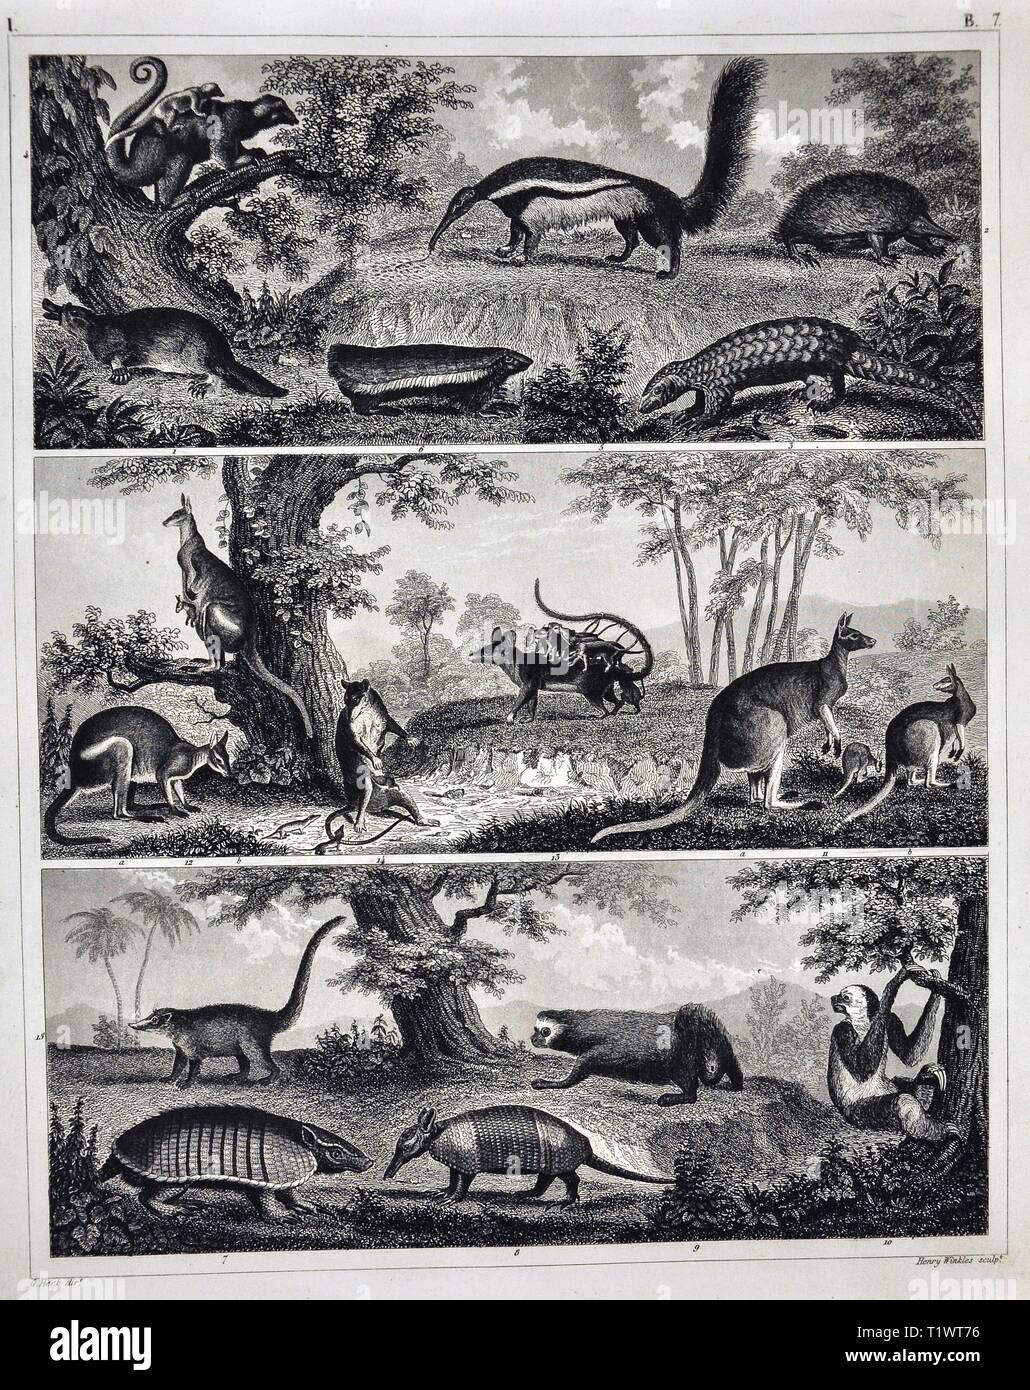 1849 - Impression zoologique La faune Les animaux - Mammifères marsupiaux kangourous, Possum, et des tatous, Pangolin, Platypus, fourmiliers et lémuriens Banque D'Images